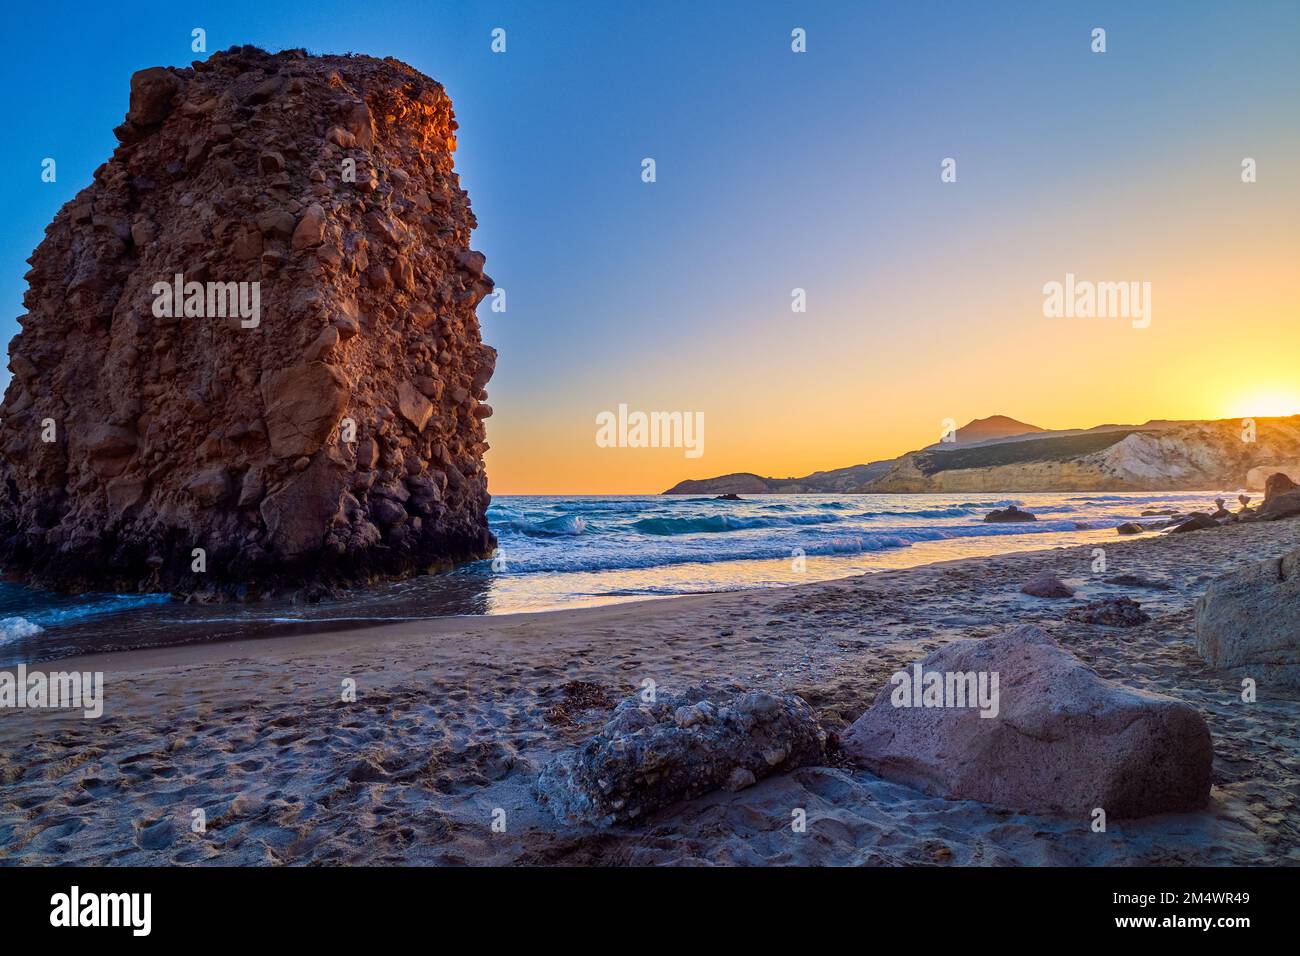 Farbenfroher Sonnenuntergang am Strand von Fyriplaka, Milos, Griechenland. Keine Menschen, niedrige Sonne. Ikonischer Fyriplaka einsamer Felsen gegen niedrige Sonne, farbenfrohen Himmel und Meer Stockfoto